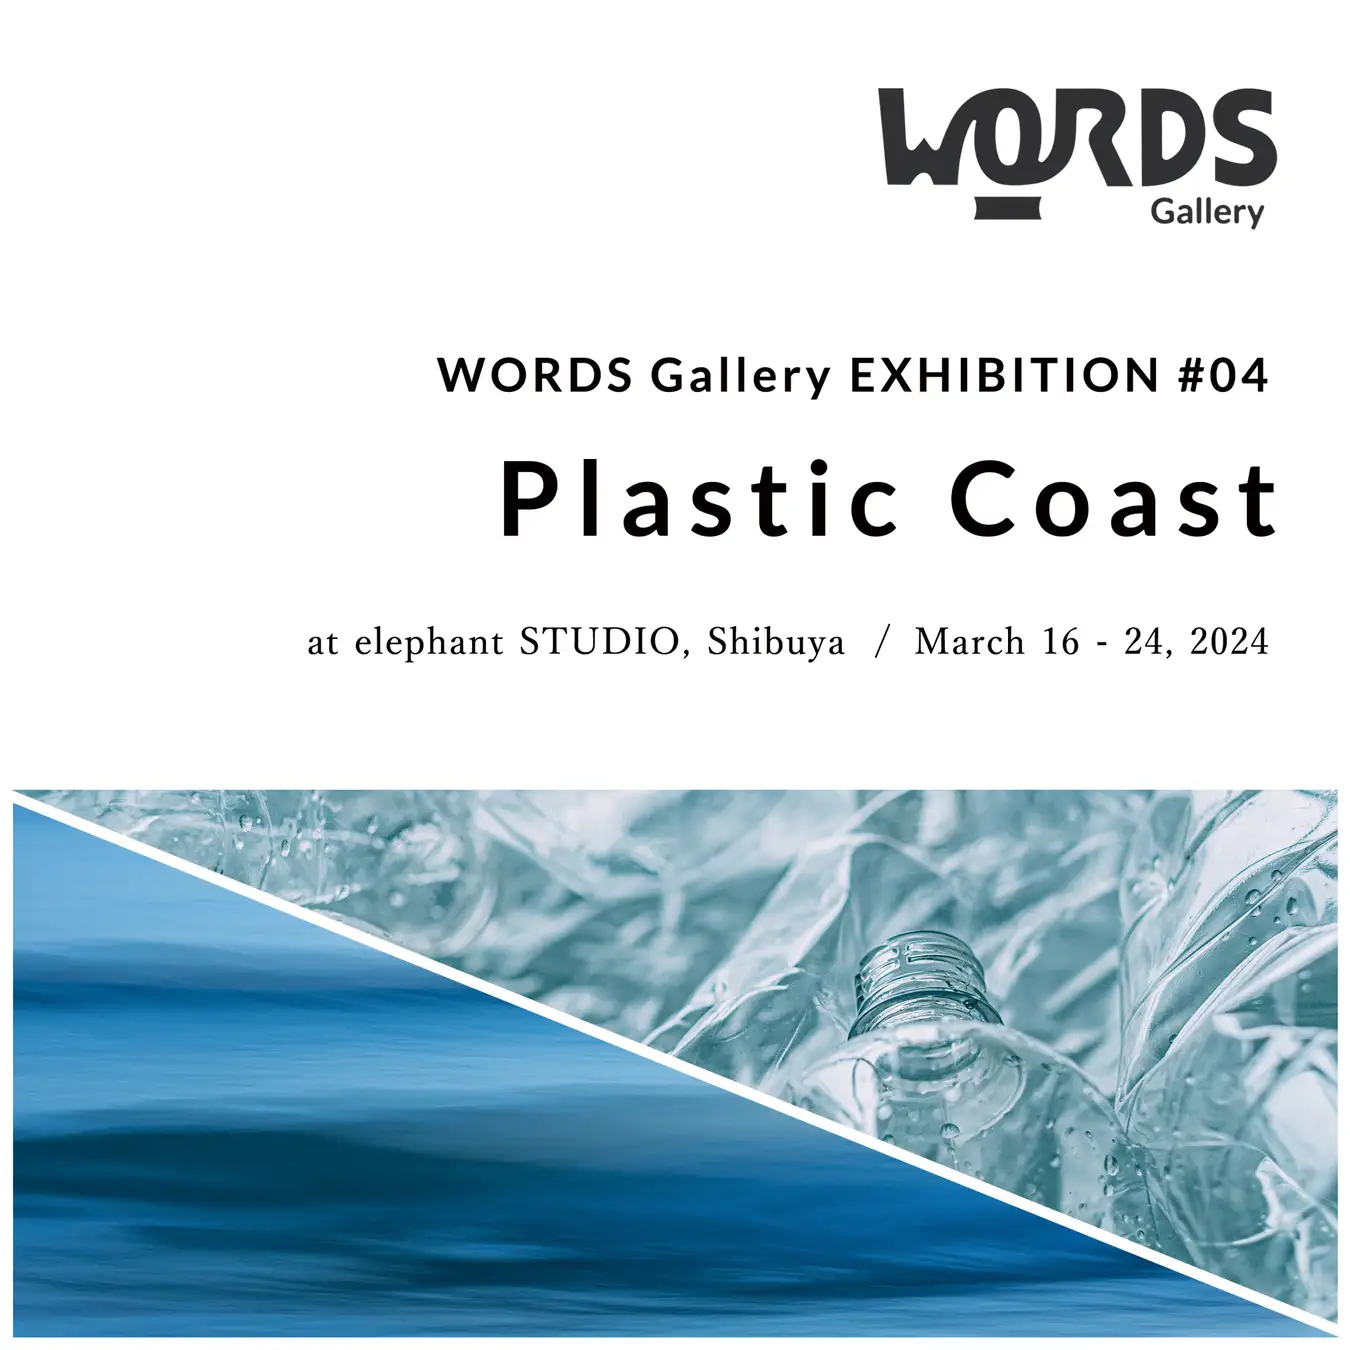 WORDS Gallery Exhibition #04 "Plastic Coast"